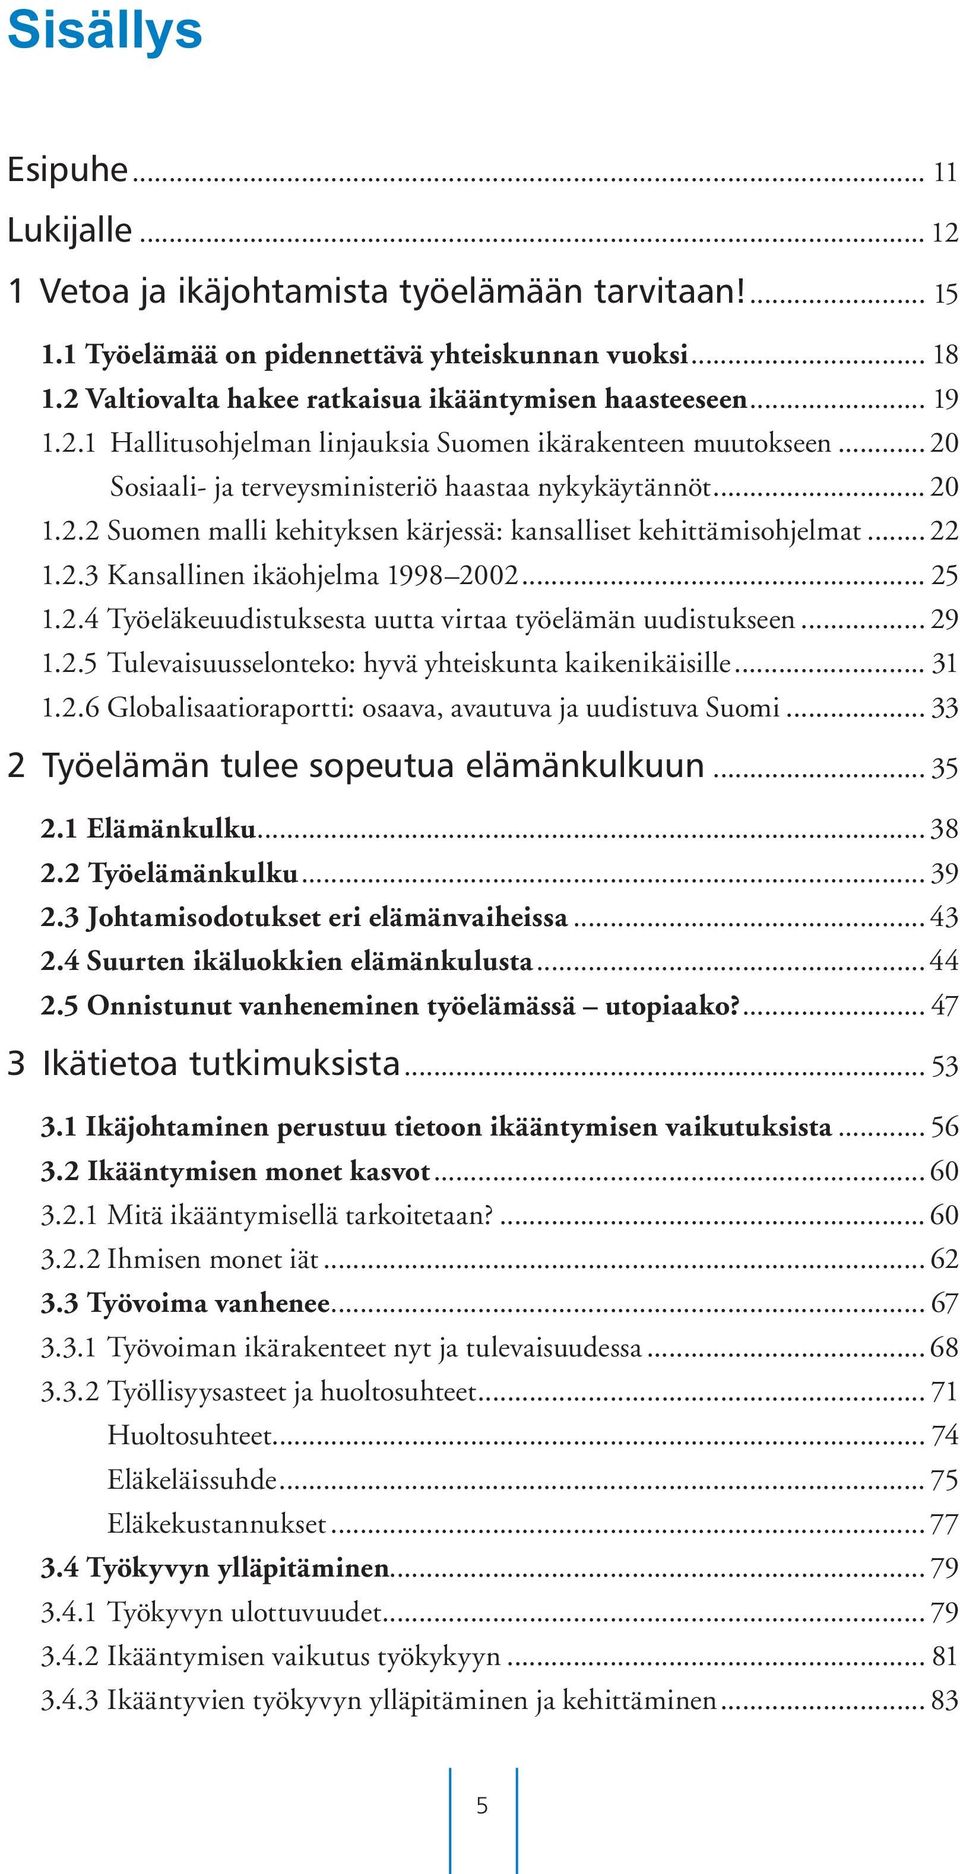 .. 22 1.2.3 Kansallinen ikäohjelma 1998 2002... 25 1.2.4 Työeläkeuudistuksesta uutta virtaa työelämän uudistukseen... 29 1.2.5 Tulevaisuusselonteko: hyvä yhteiskunta kaikenikäisille... 31 1.2.6 Globalisaatioraportti: osaava, avautuva ja uudistuva Suomi.